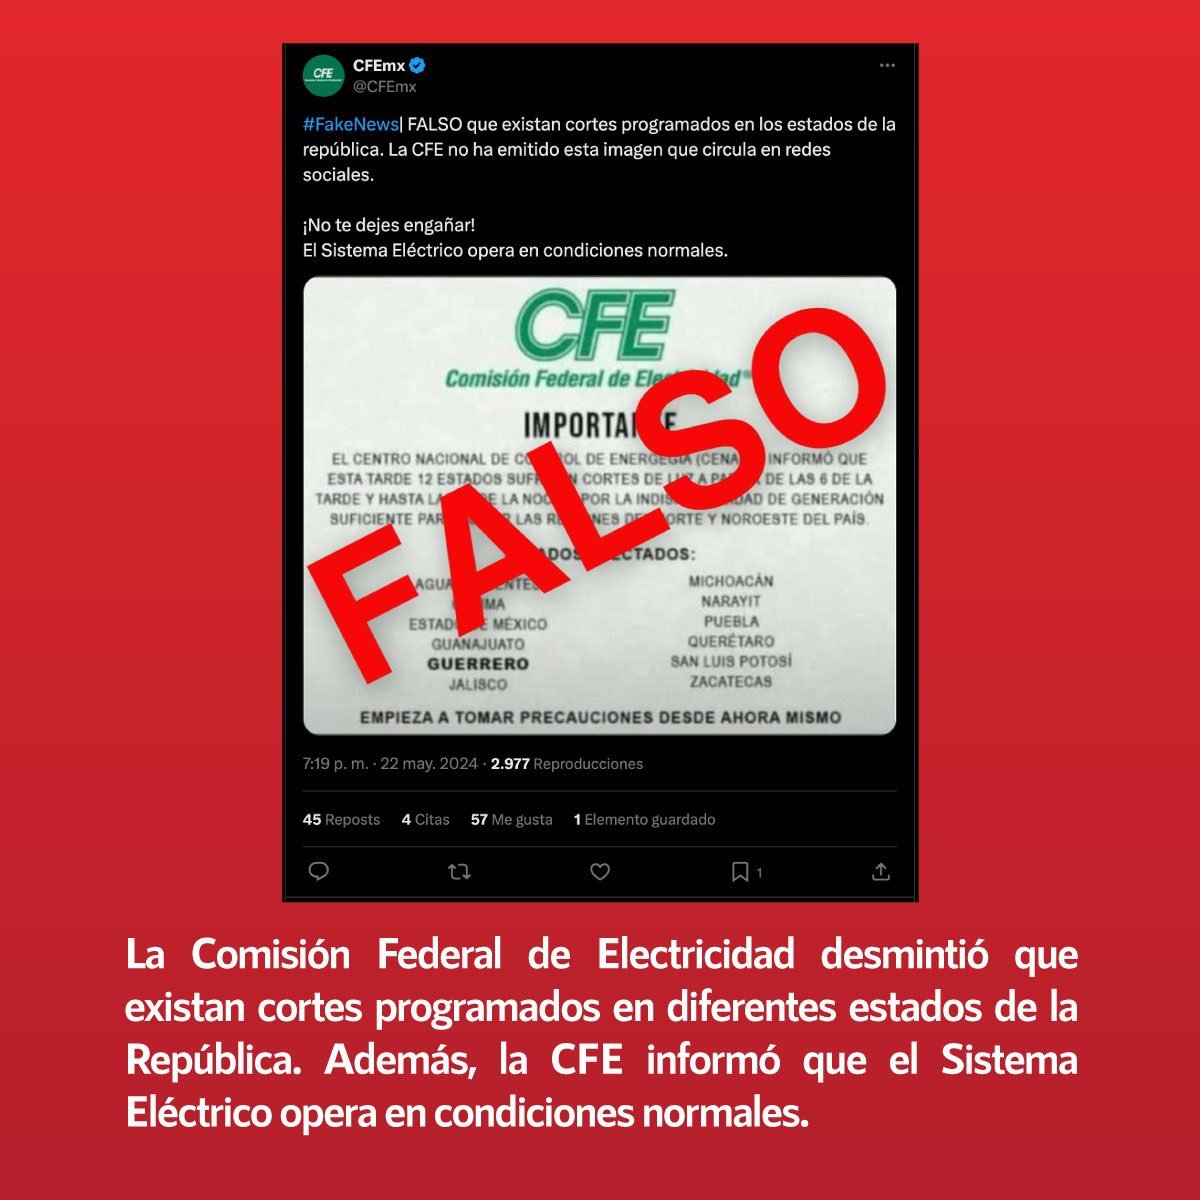 🚨#FakeNewsAlert ❌Falso que la #CFE programó cortes de luz en los estados de la República ✅La @CFEmx desmintió la información y aclaró que el Sistema Eléctrico opera con normalidad ➡️Desmentido: infodemia.mx/entrada/5596